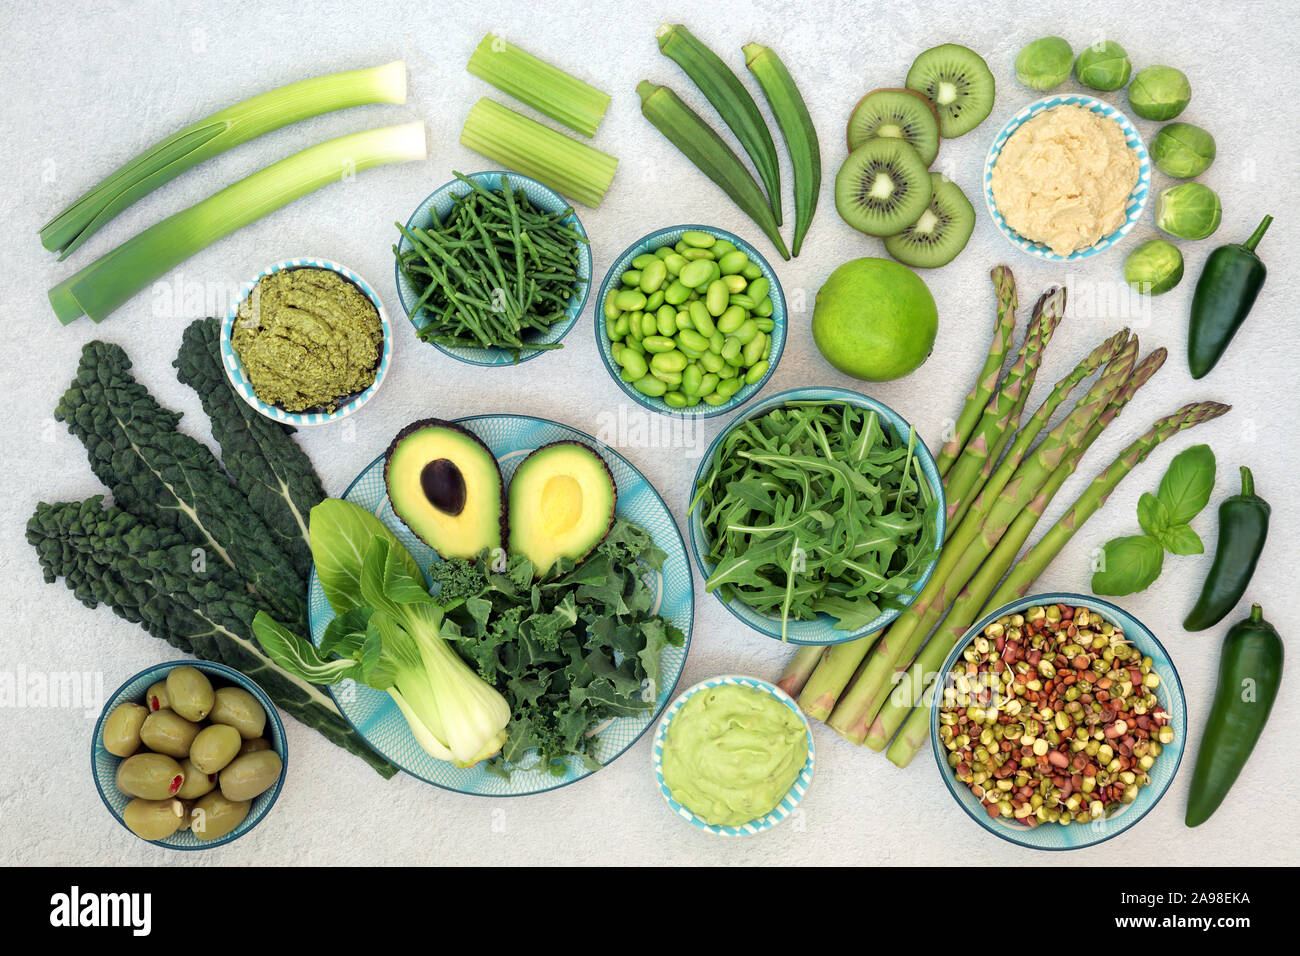 Super aliment vert collection avec fruits, légumes et trempettes, riche en protéines, vitamines, minéraux, antioxydants et acides gras oméga 3. Mise à plat. Banque D'Images